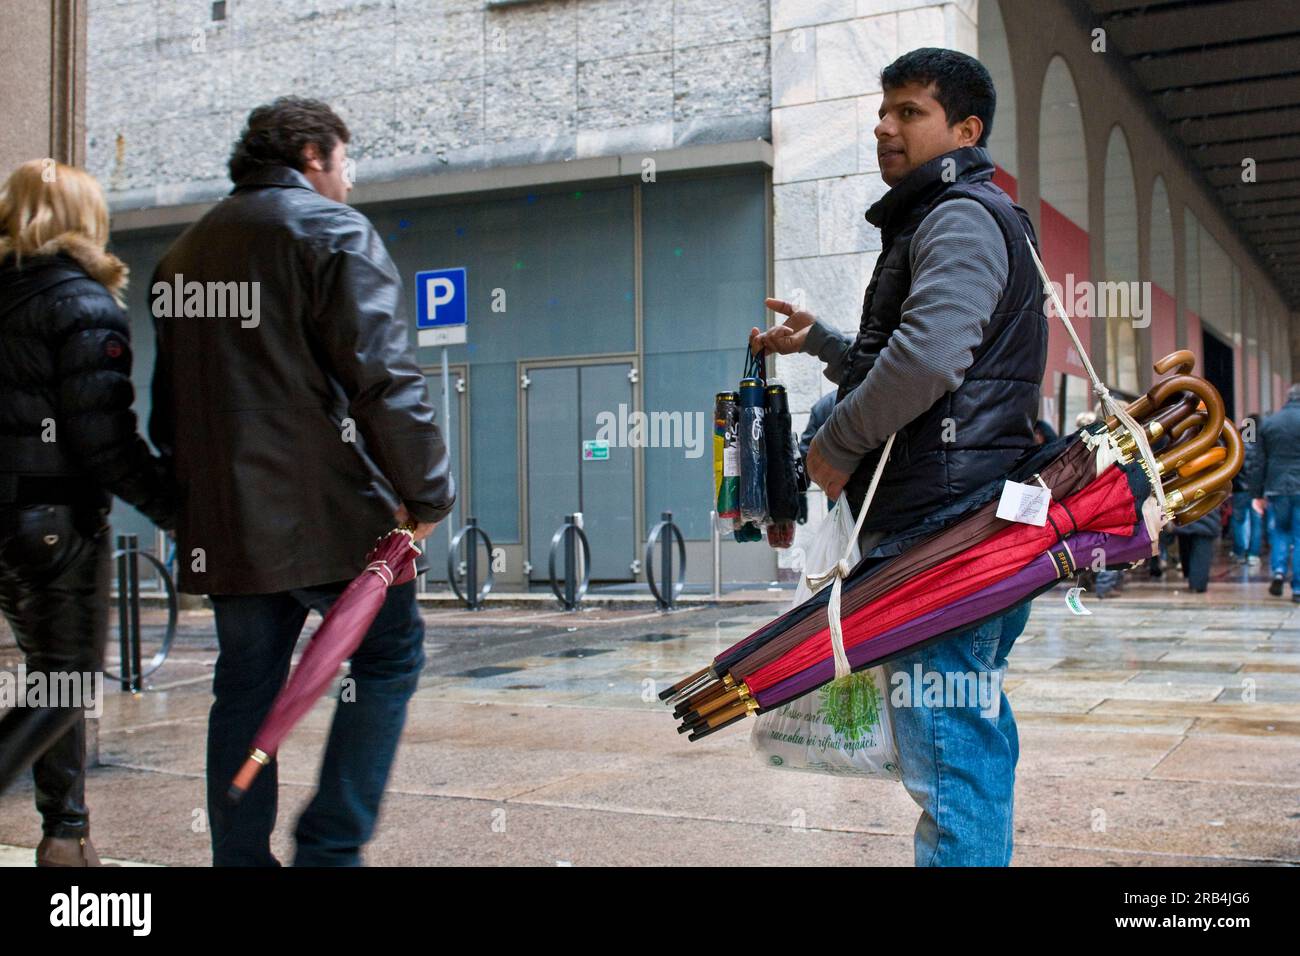 Immigrato bengalese che vende ombrelli. Milano. Italia Foto Stock